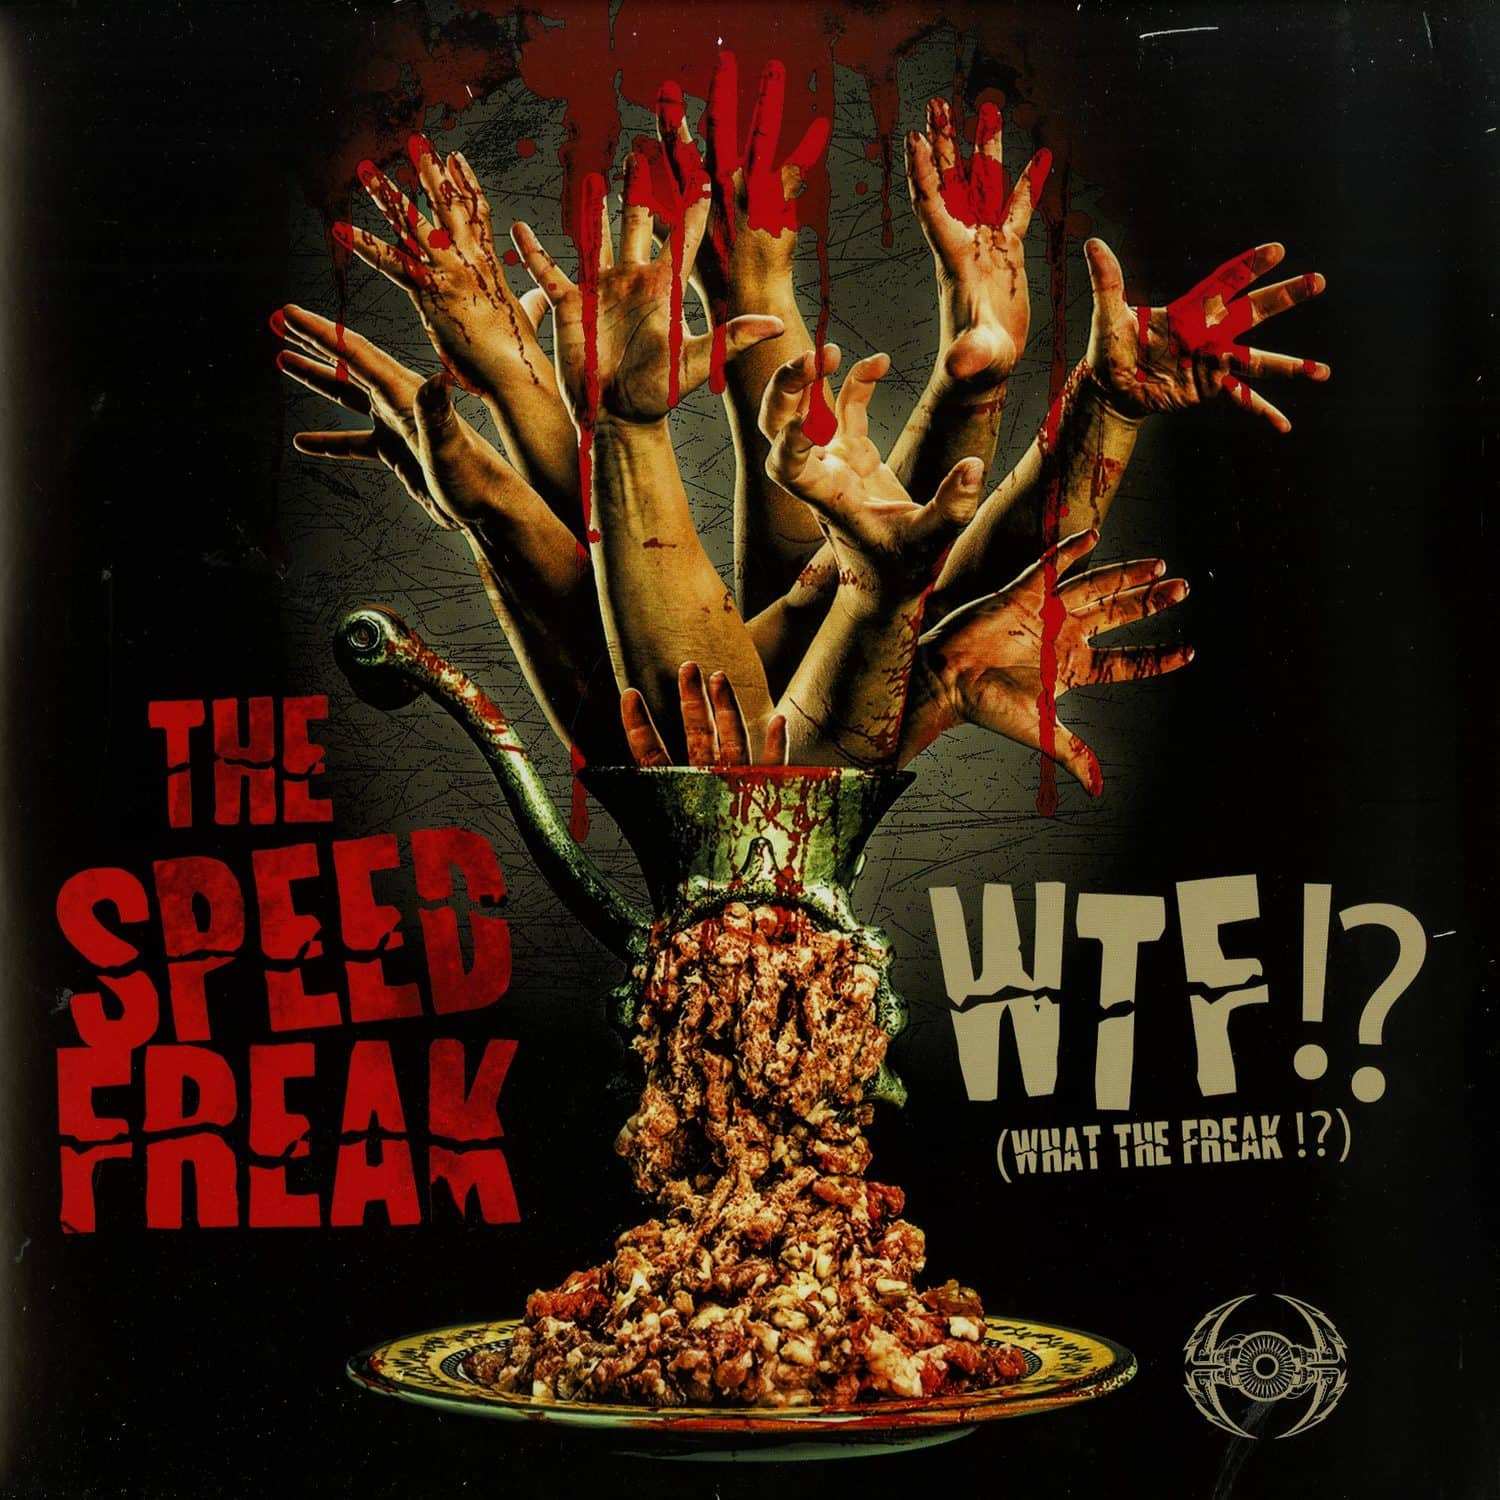 The Speed Freak - WTF!? 